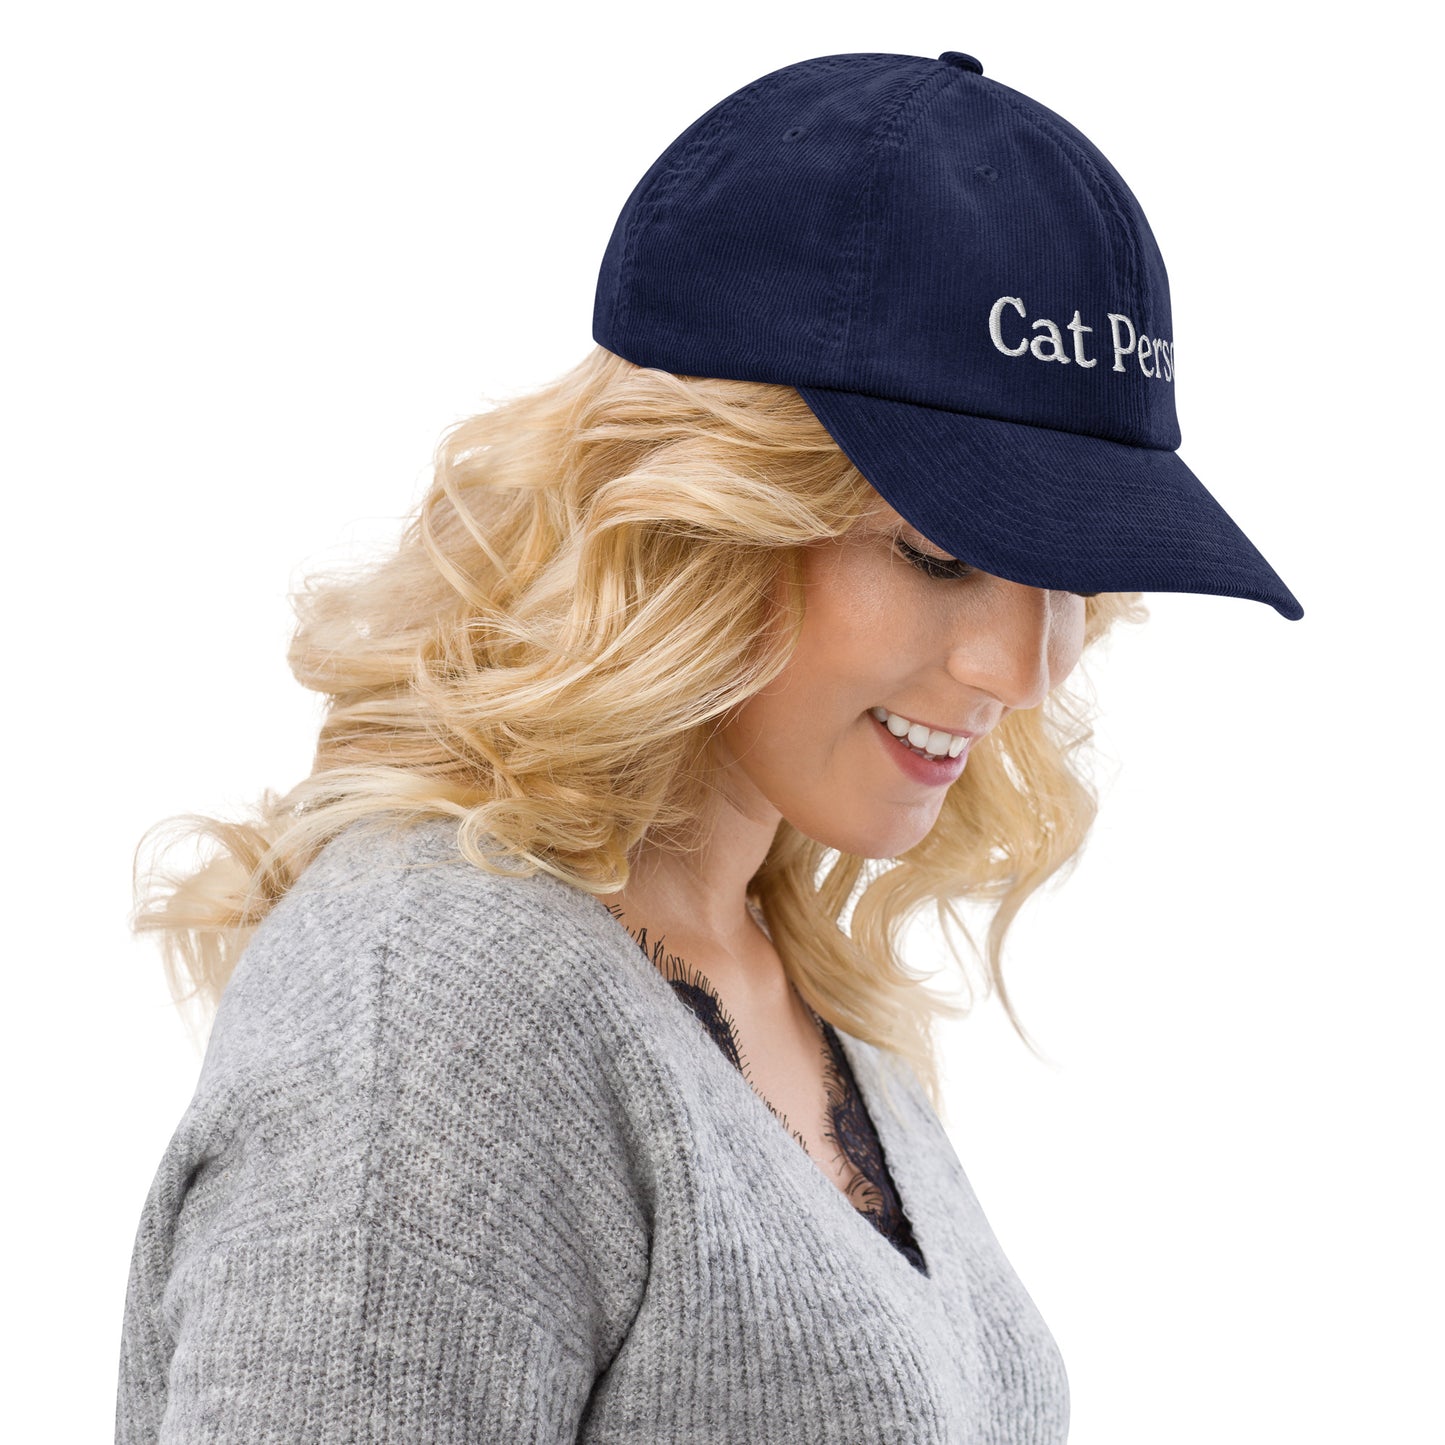 Cat Person Corduroy Hat